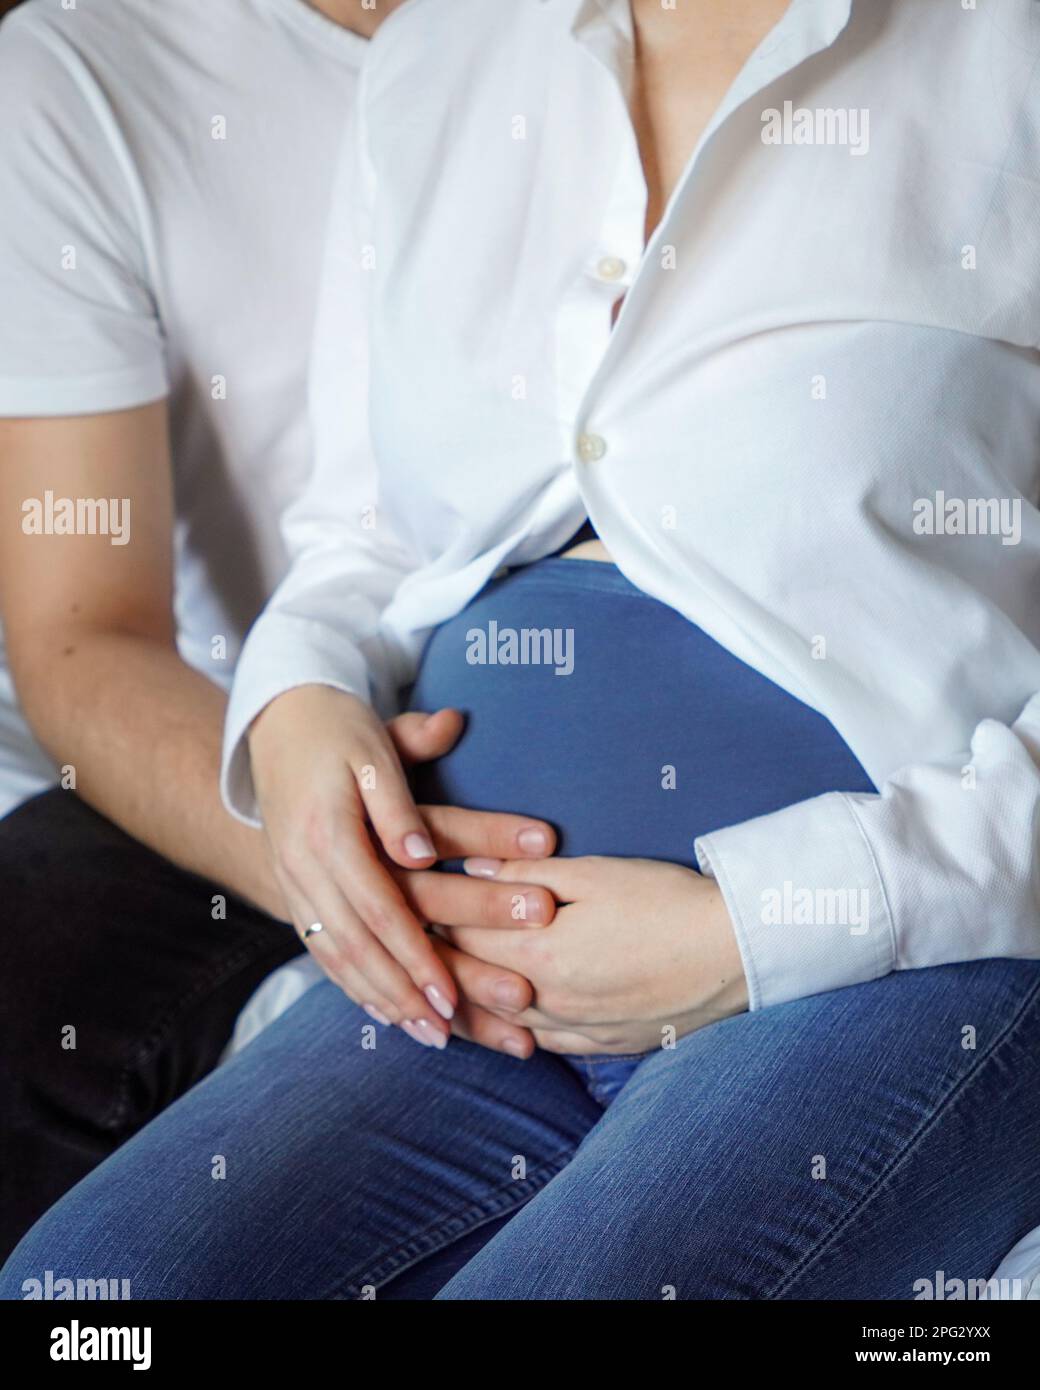 Eine Nahaufnahme der miteinander verbundenen Hände eines liebevollen Paares, das auf dem Bauch einer schwangeren Frau ruht Stockfoto